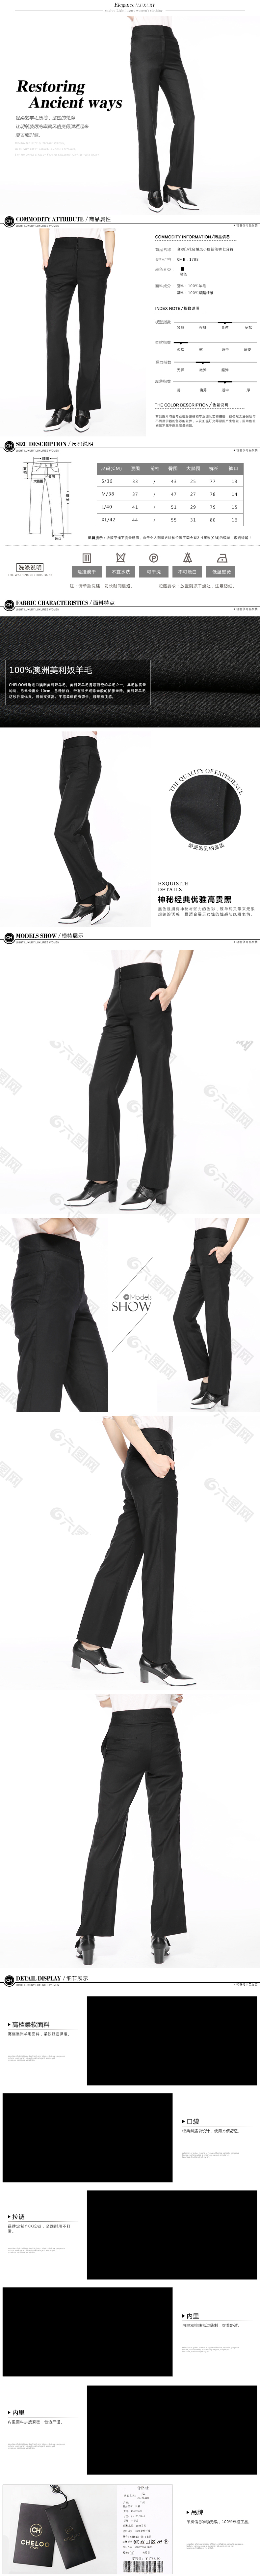 西裤淘宝详情页描述高端大气简约时尚